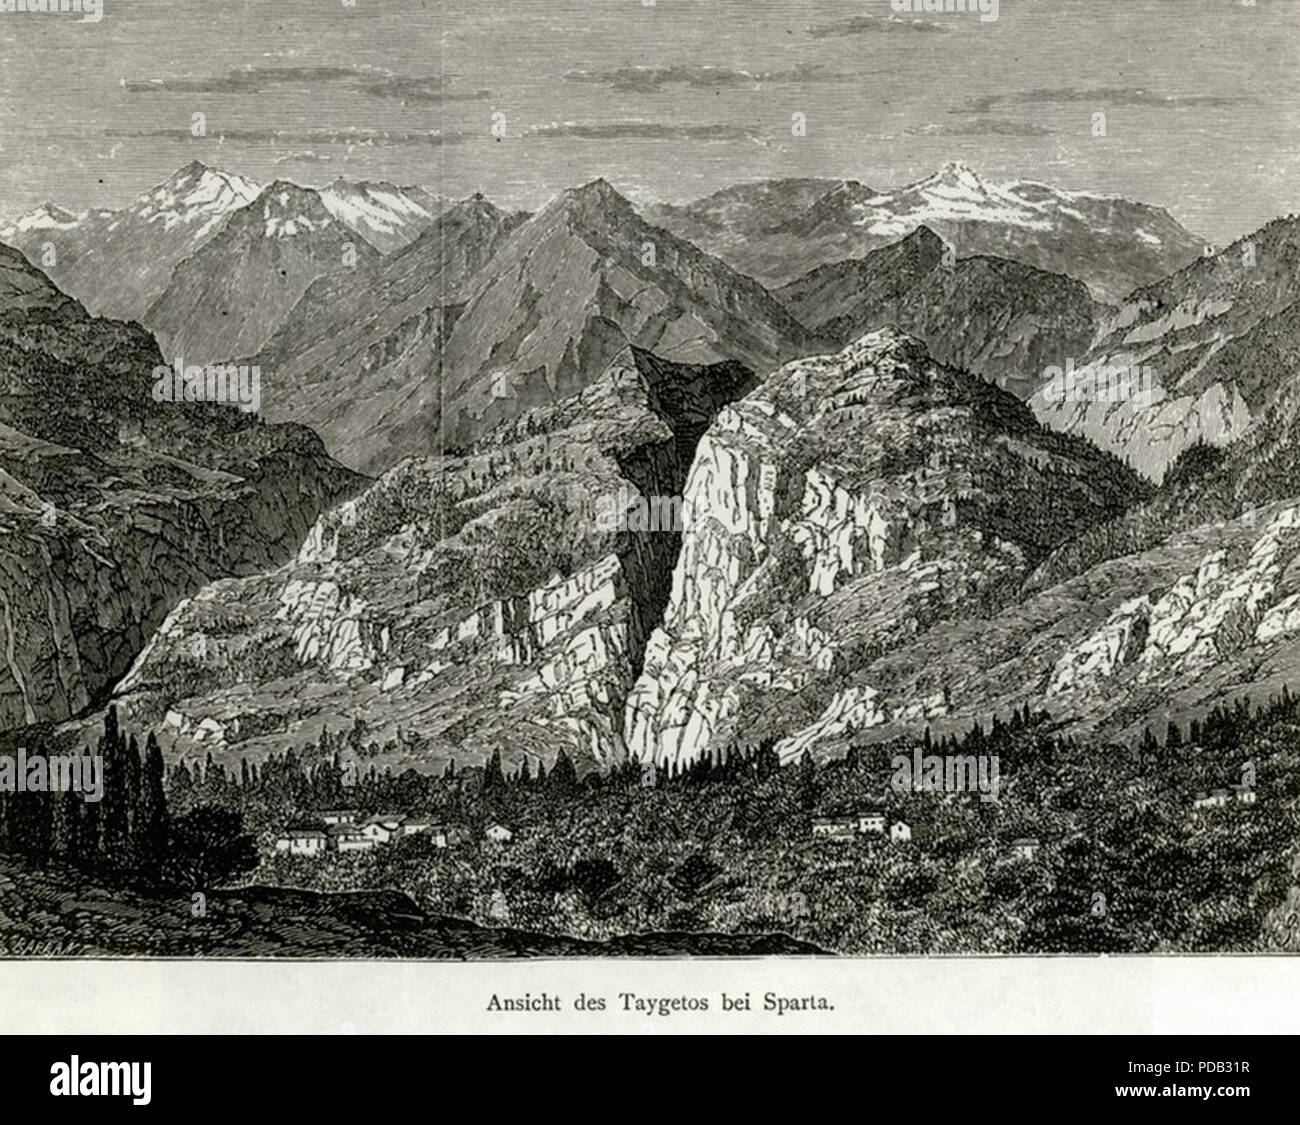 Ansicht des Taigetos bei Sparta - Schweiger Lerchenfeld Amand (Freiherr von) - 1887. Foto Stock